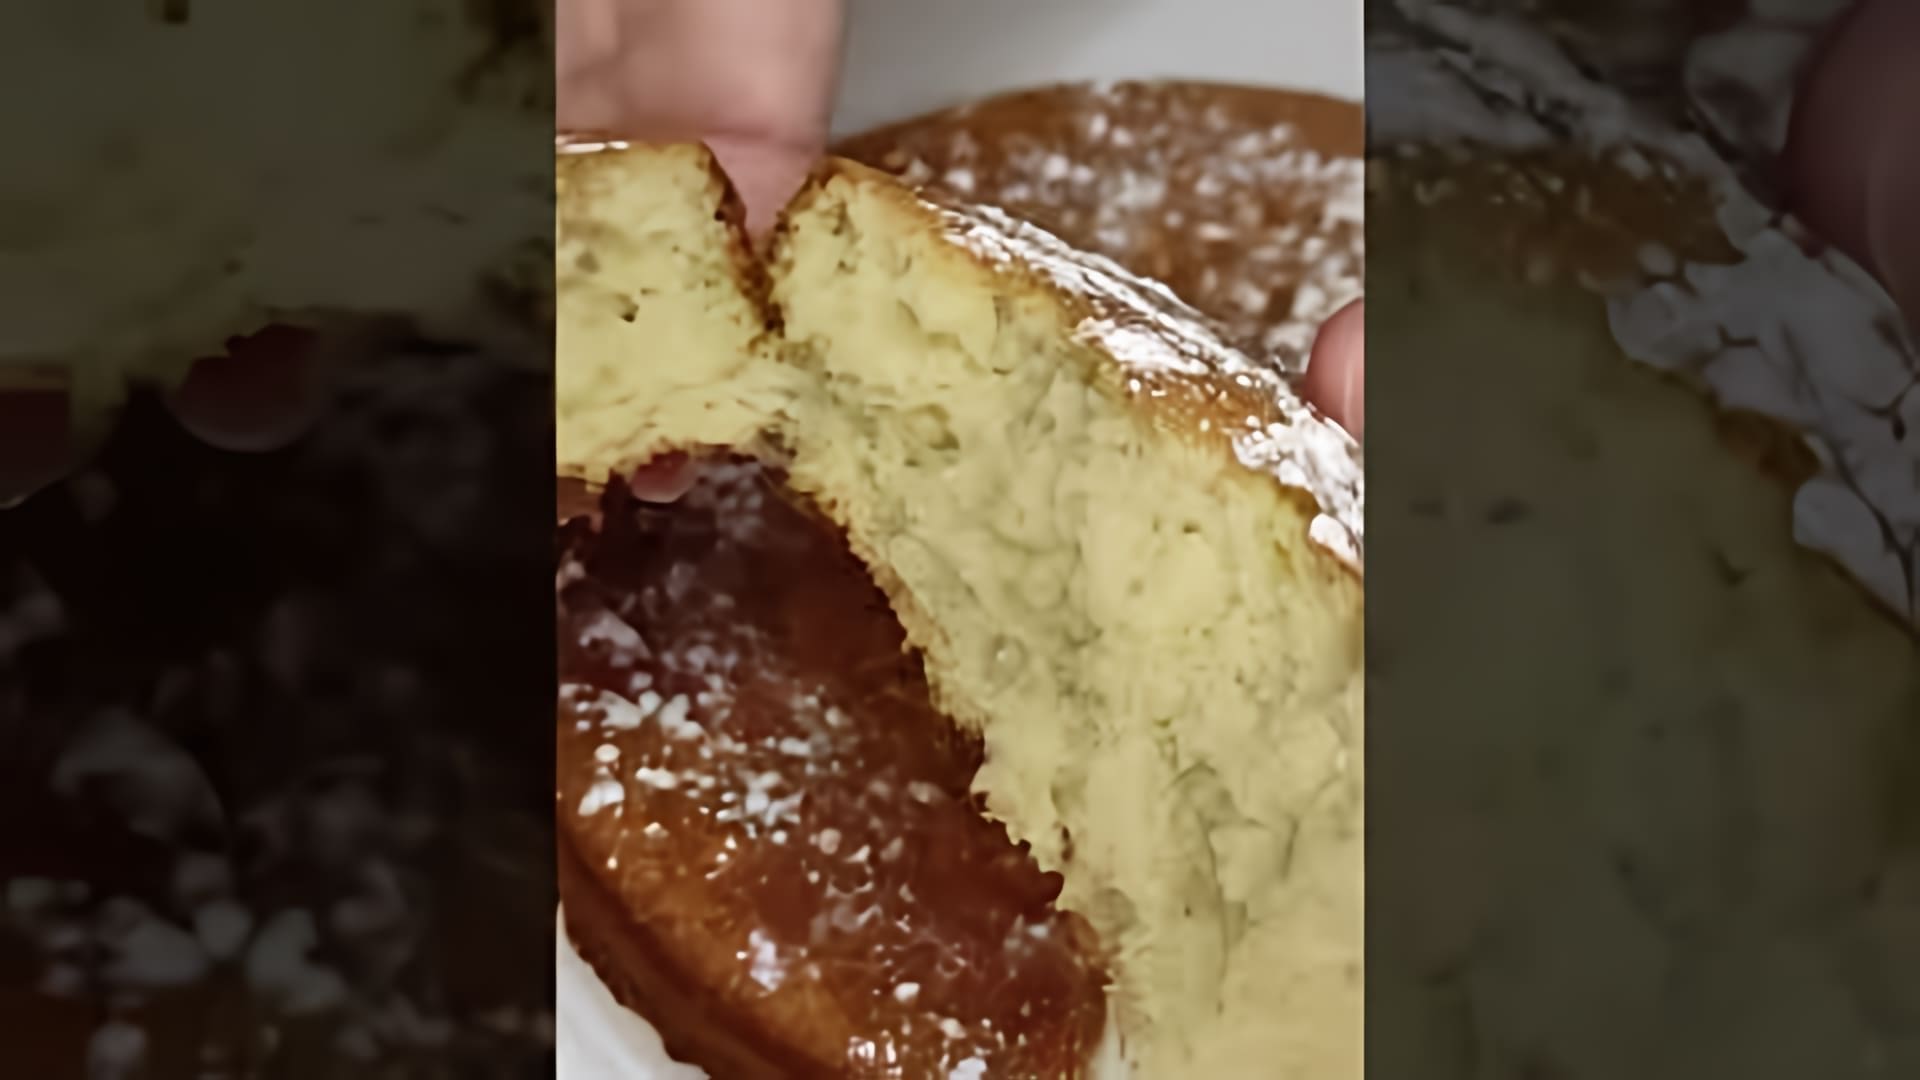 "Простой рецепт кекса на кефире" - это видео-ролик, который демонстрирует процесс приготовления вкусного и ароматного кекса в духовке